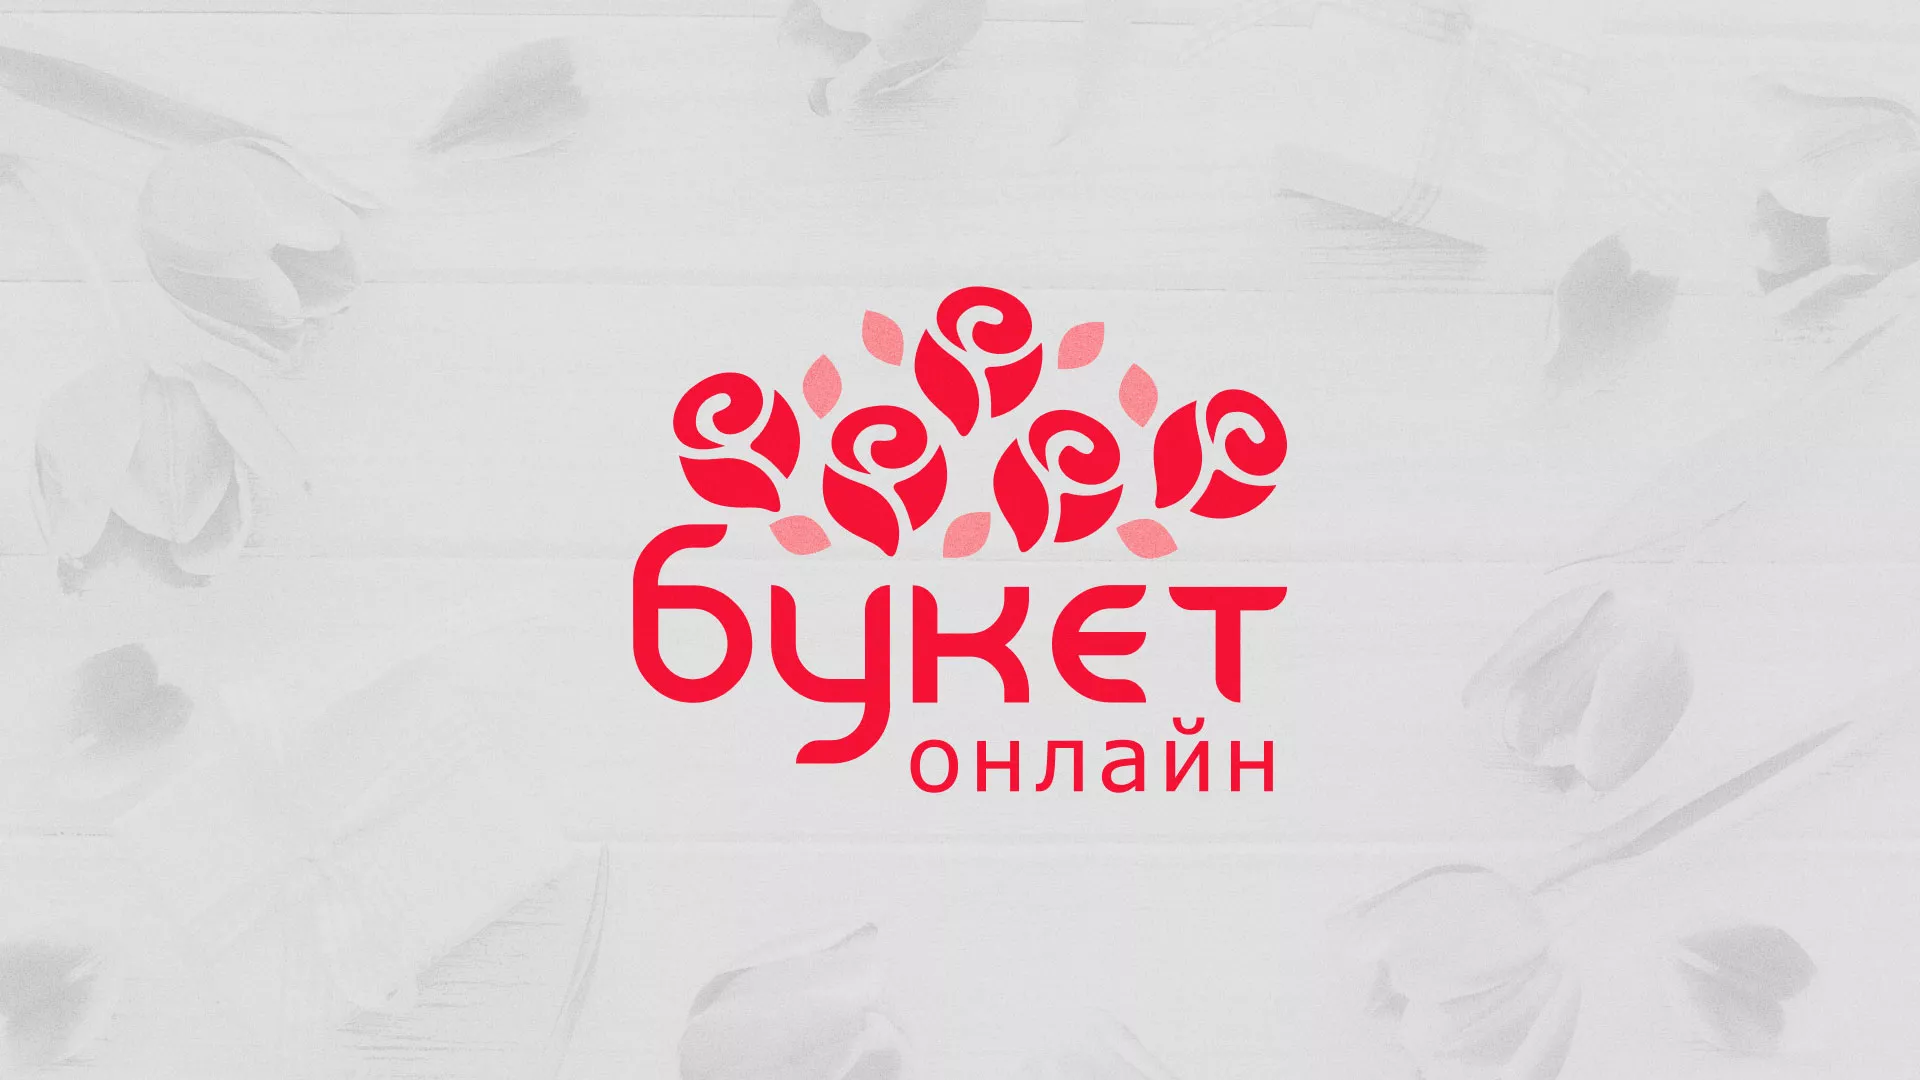 Создание интернет-магазина «Букет-онлайн» по цветам в Советском